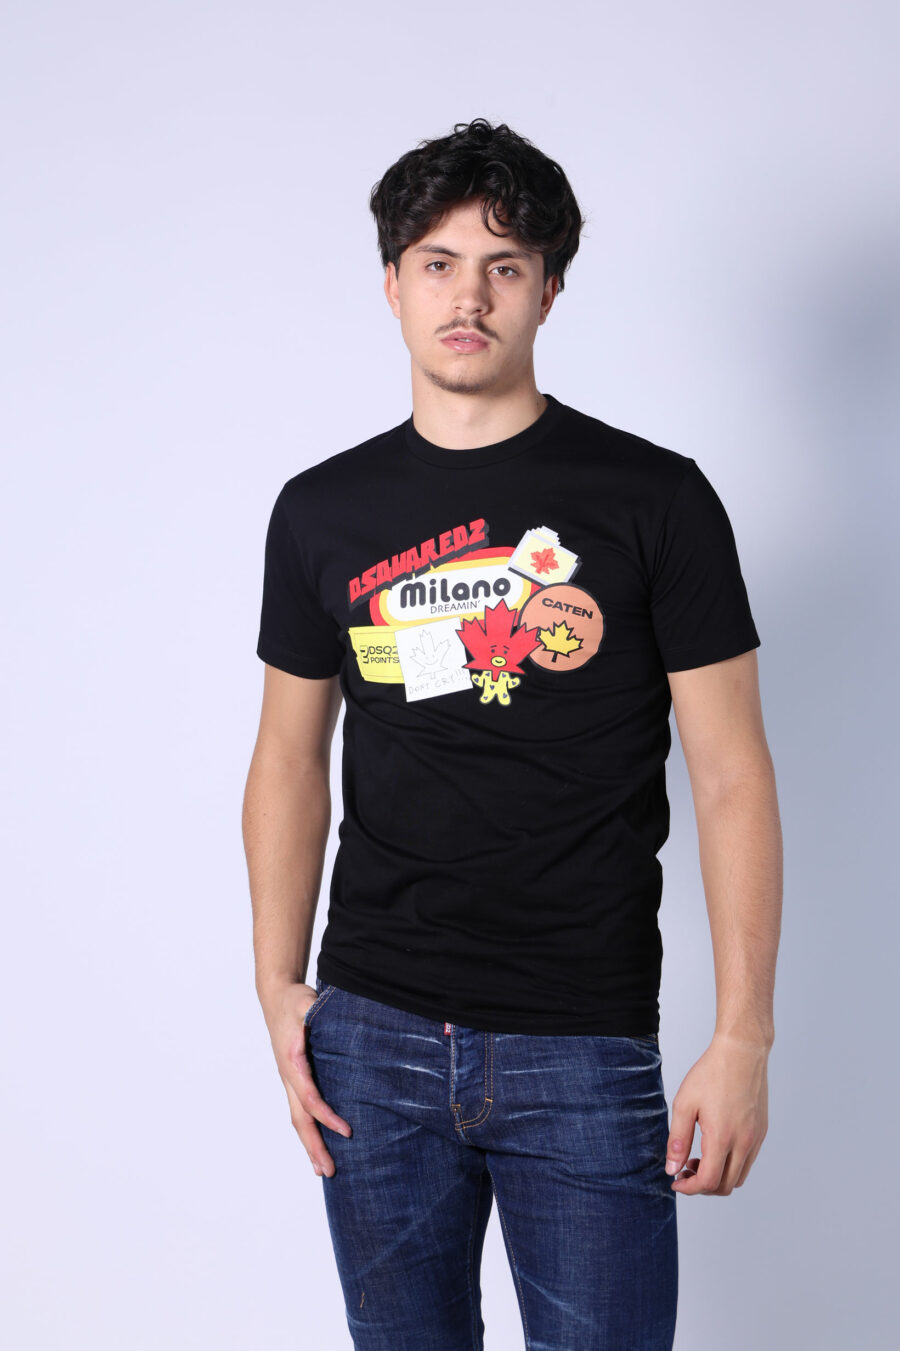 T-shirt preta com o logótipo "sitckers" maxi - Untitled Catalog 05493